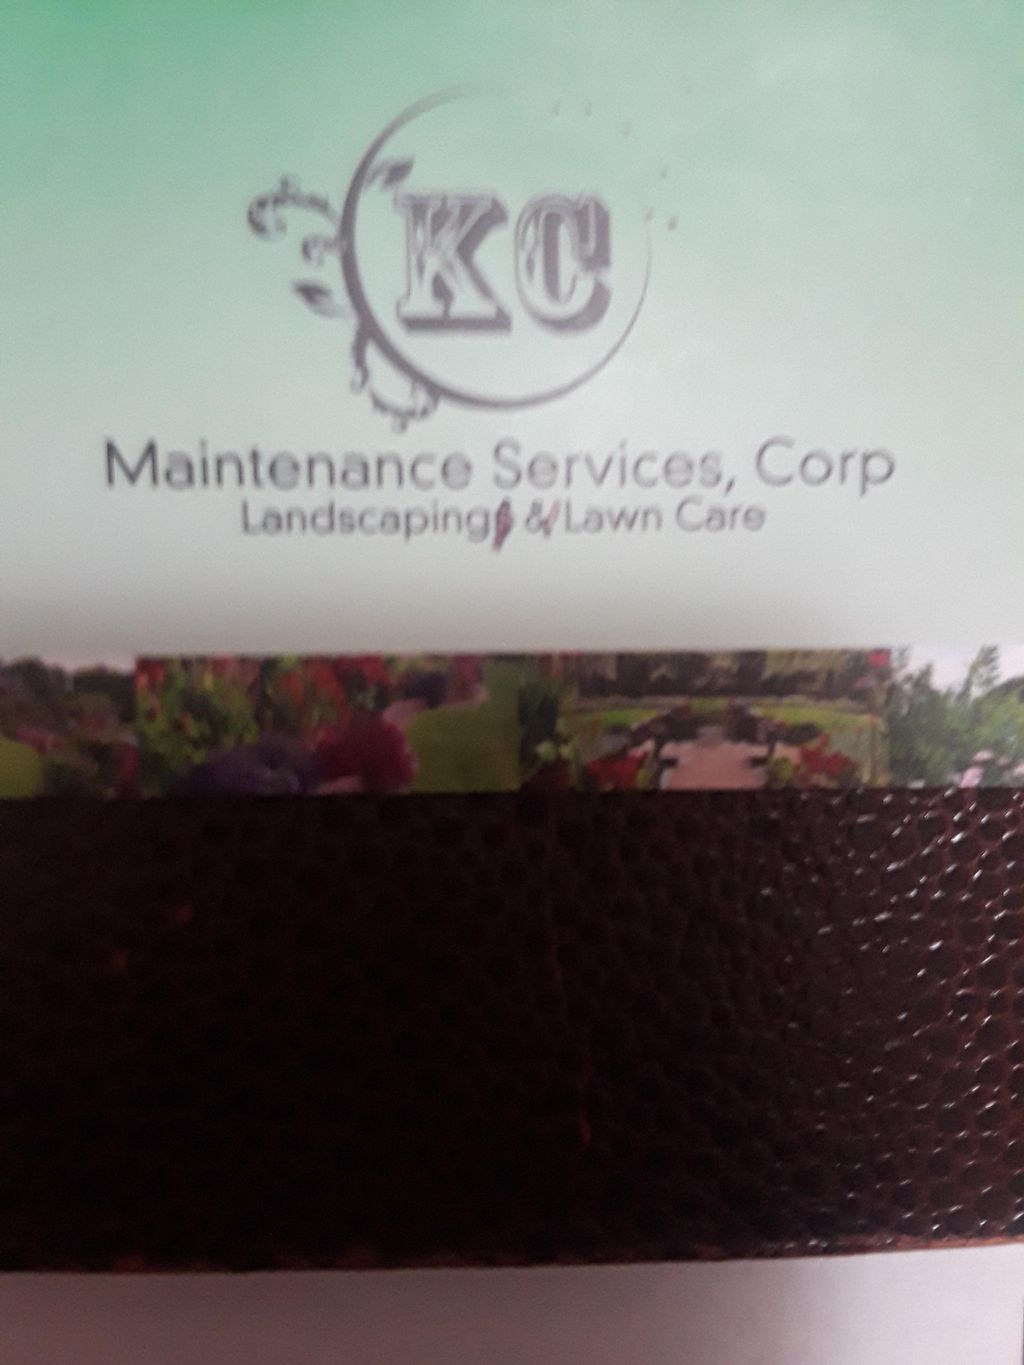 KC Maintenance Services Corp